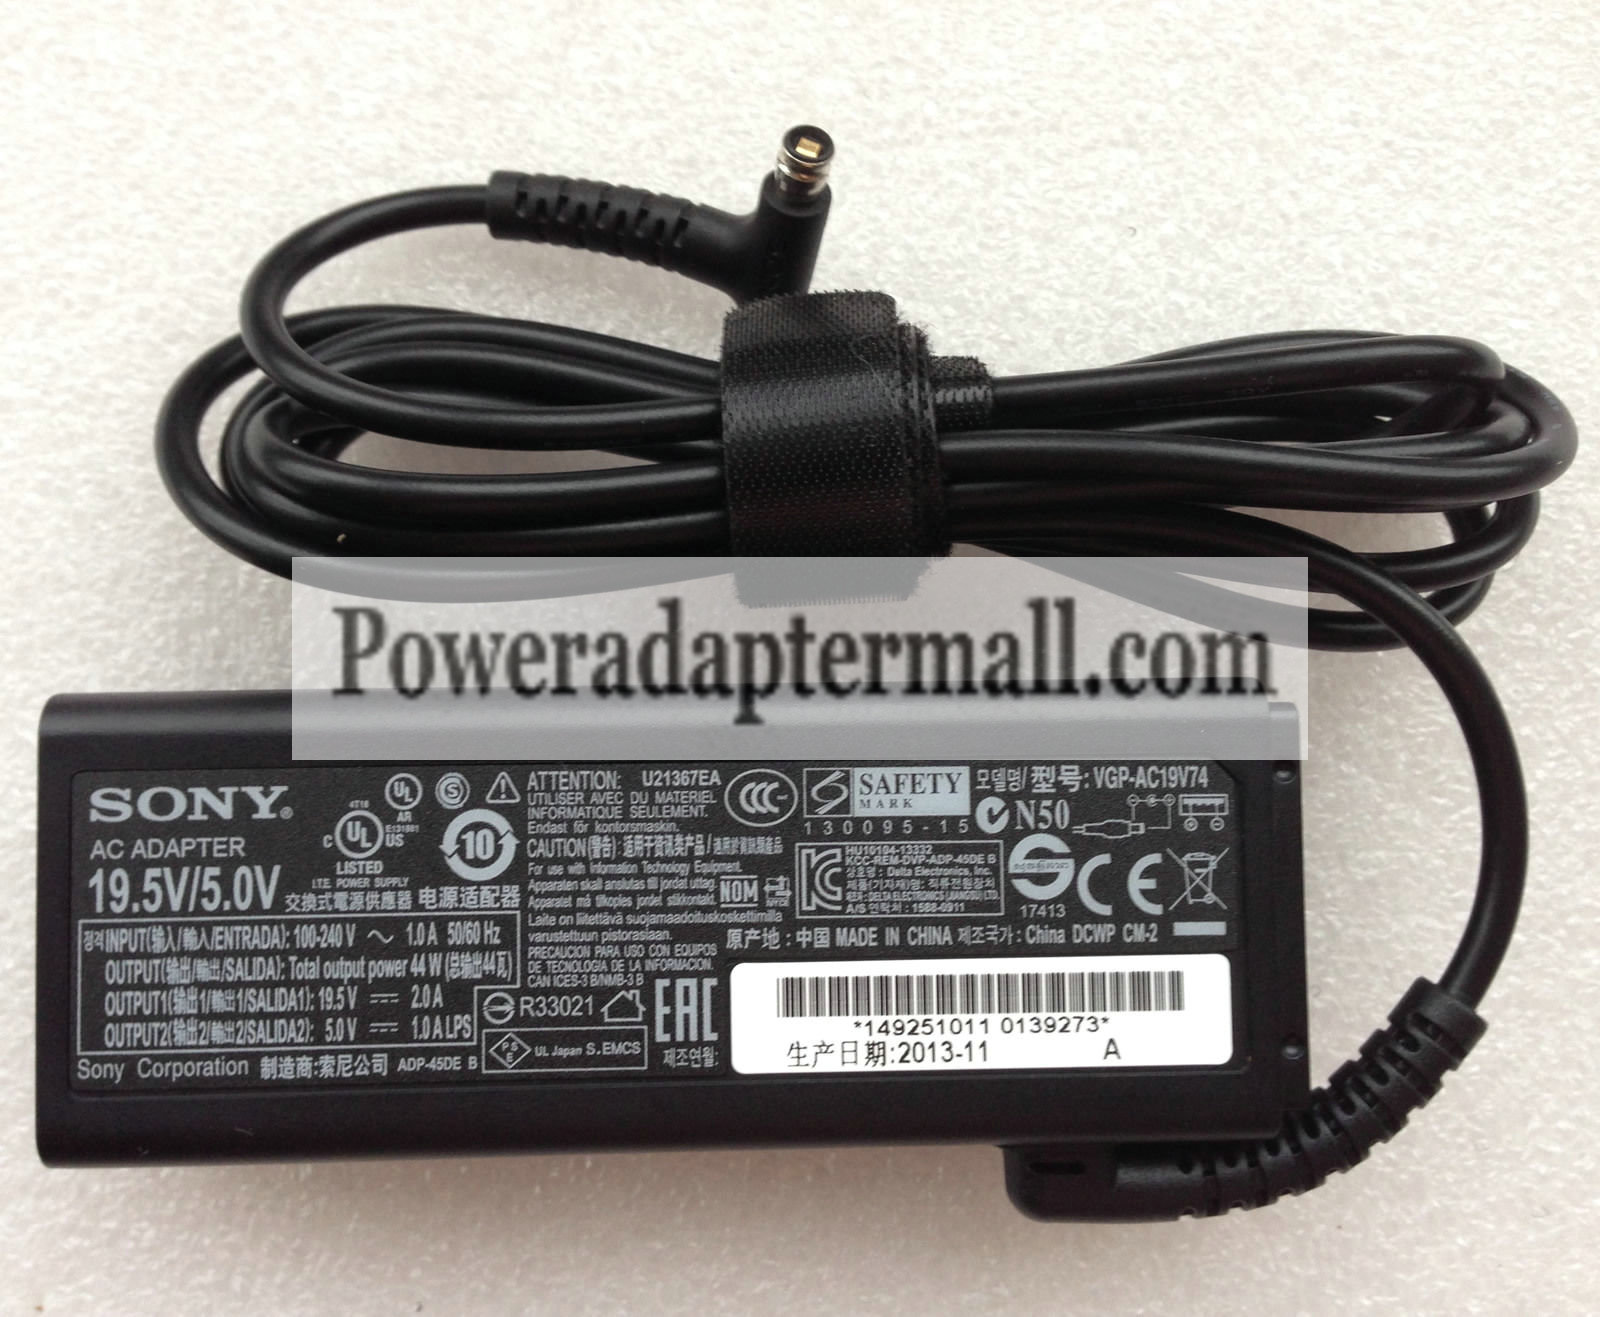 Original Sony VAIO Tap 11 SVT112190S 19.5V/5.0A AC Adapter power